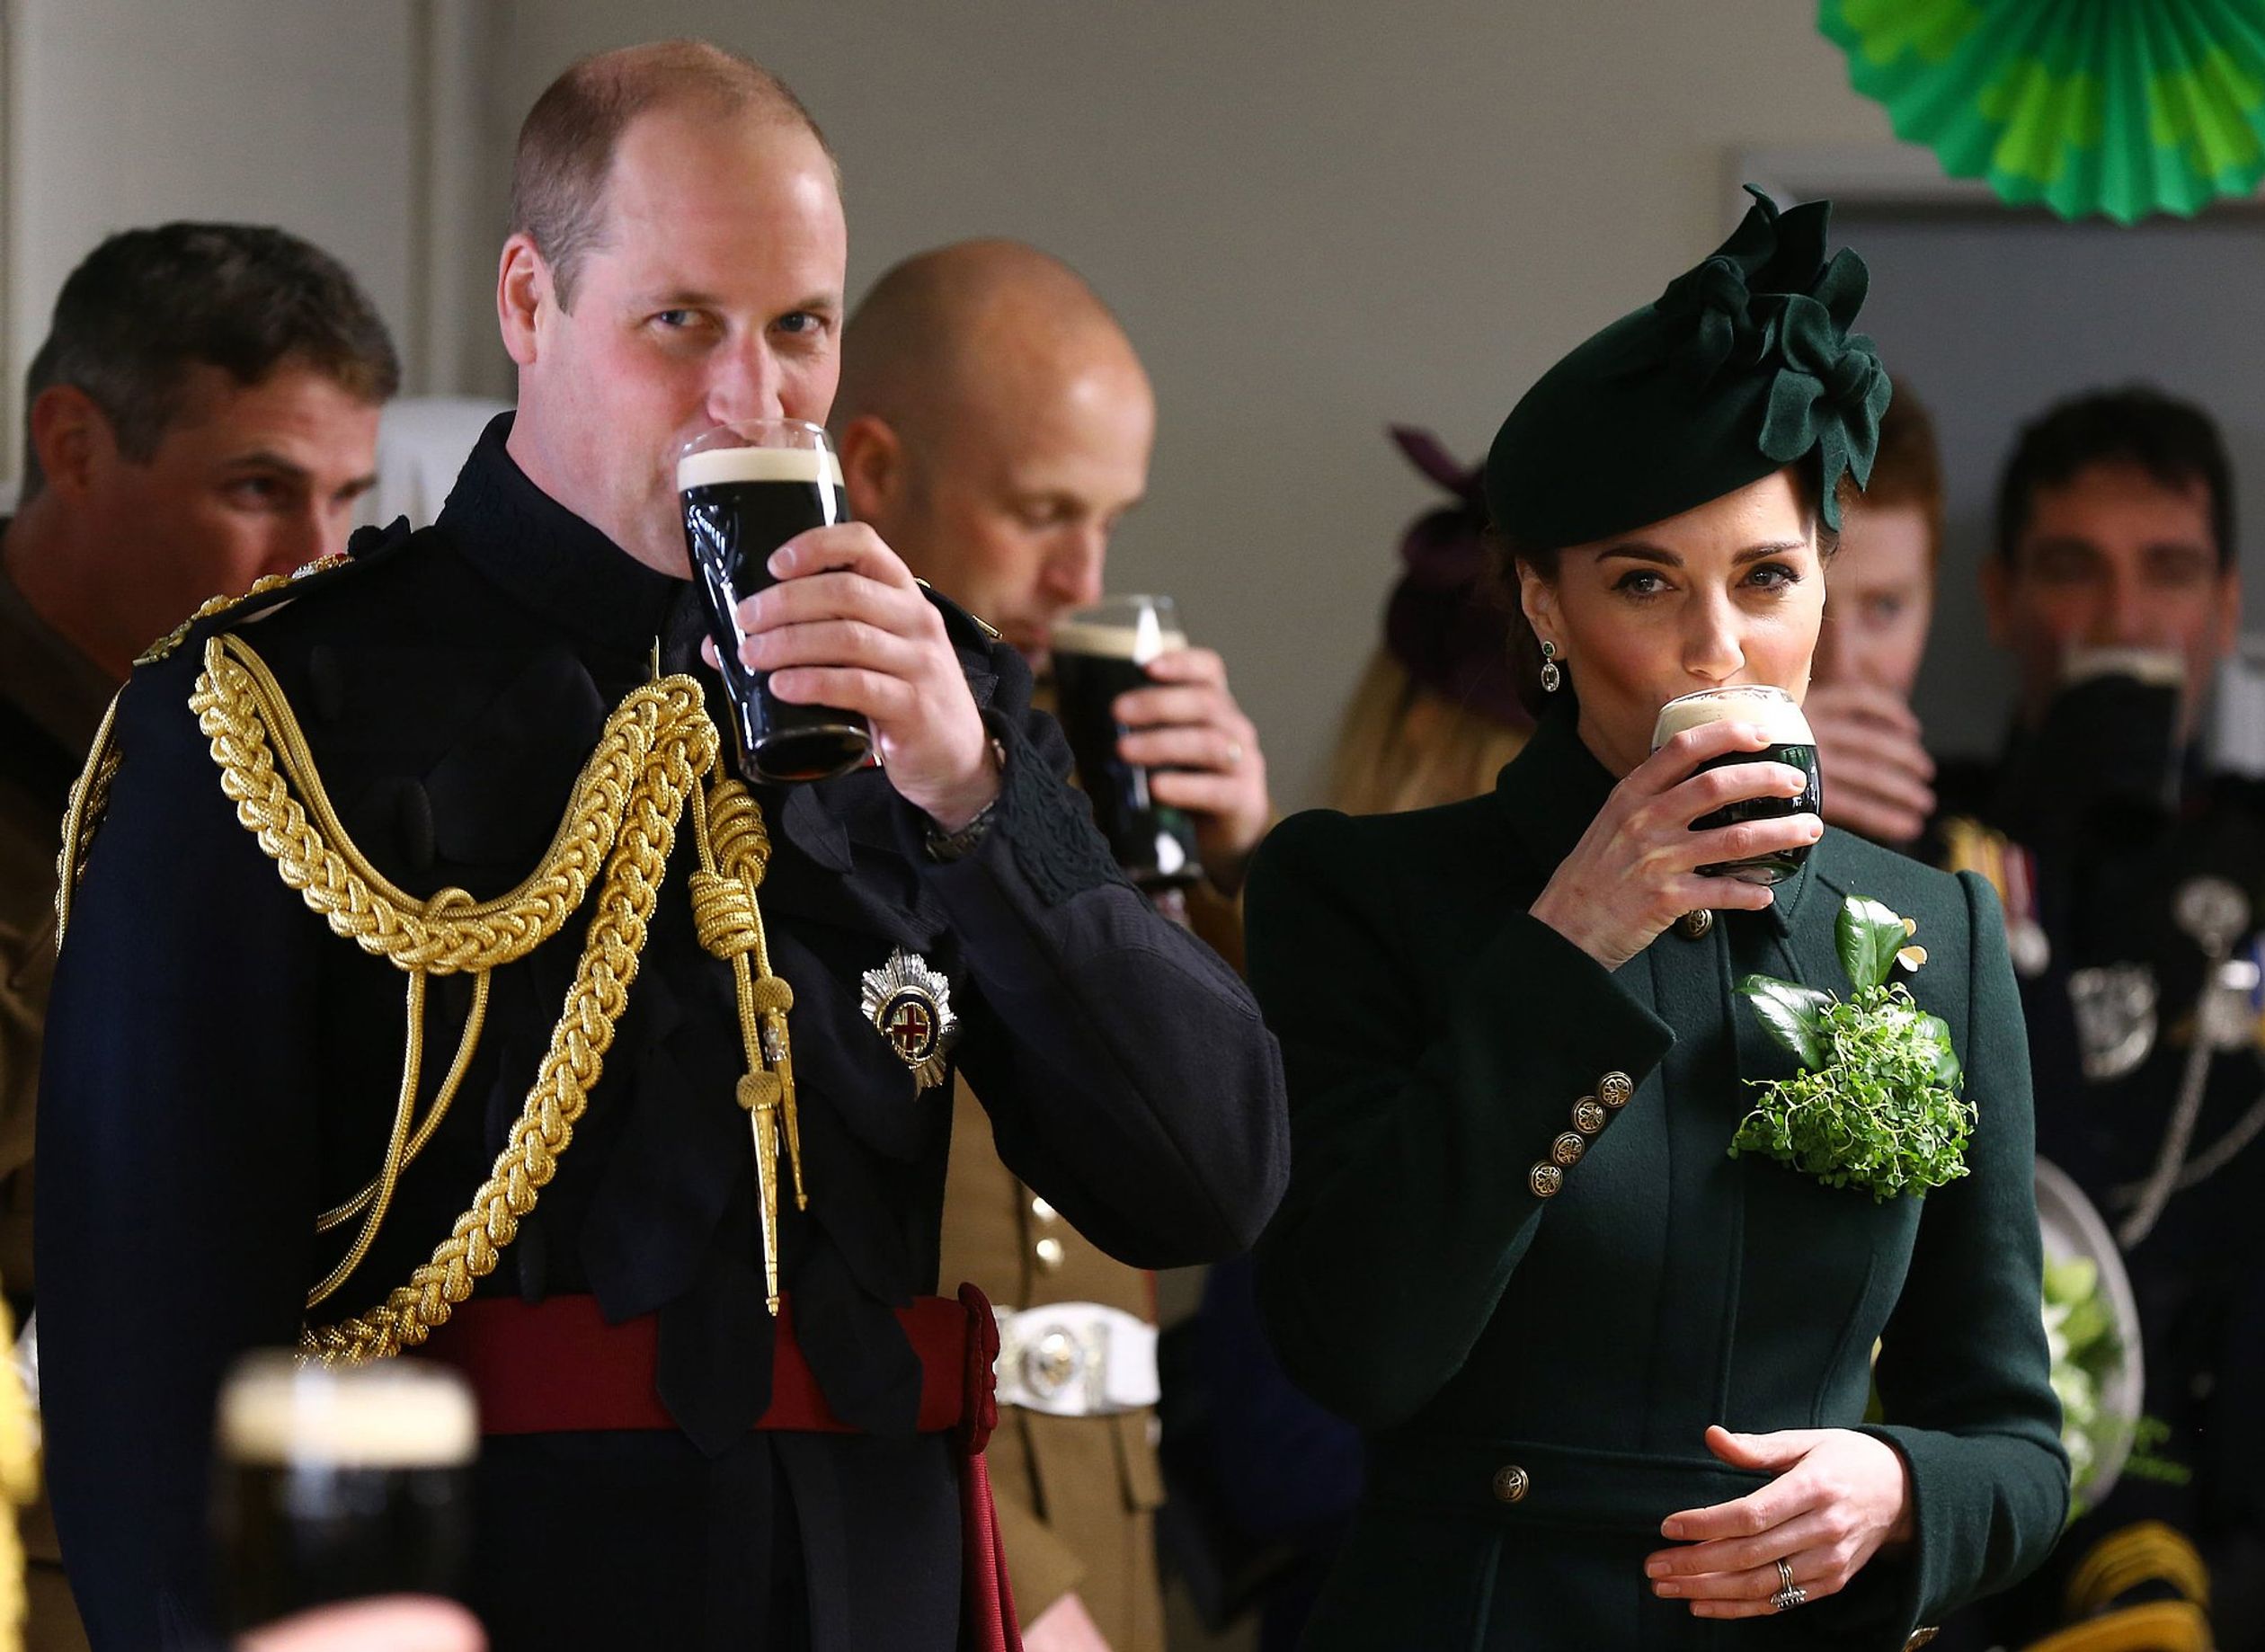 Nog een keertje van Guiness genieten! William en Catherine proosten met de officieren van het 1e Bataljon Ierse Bewakers na de St Patrick's Day parade (2020).